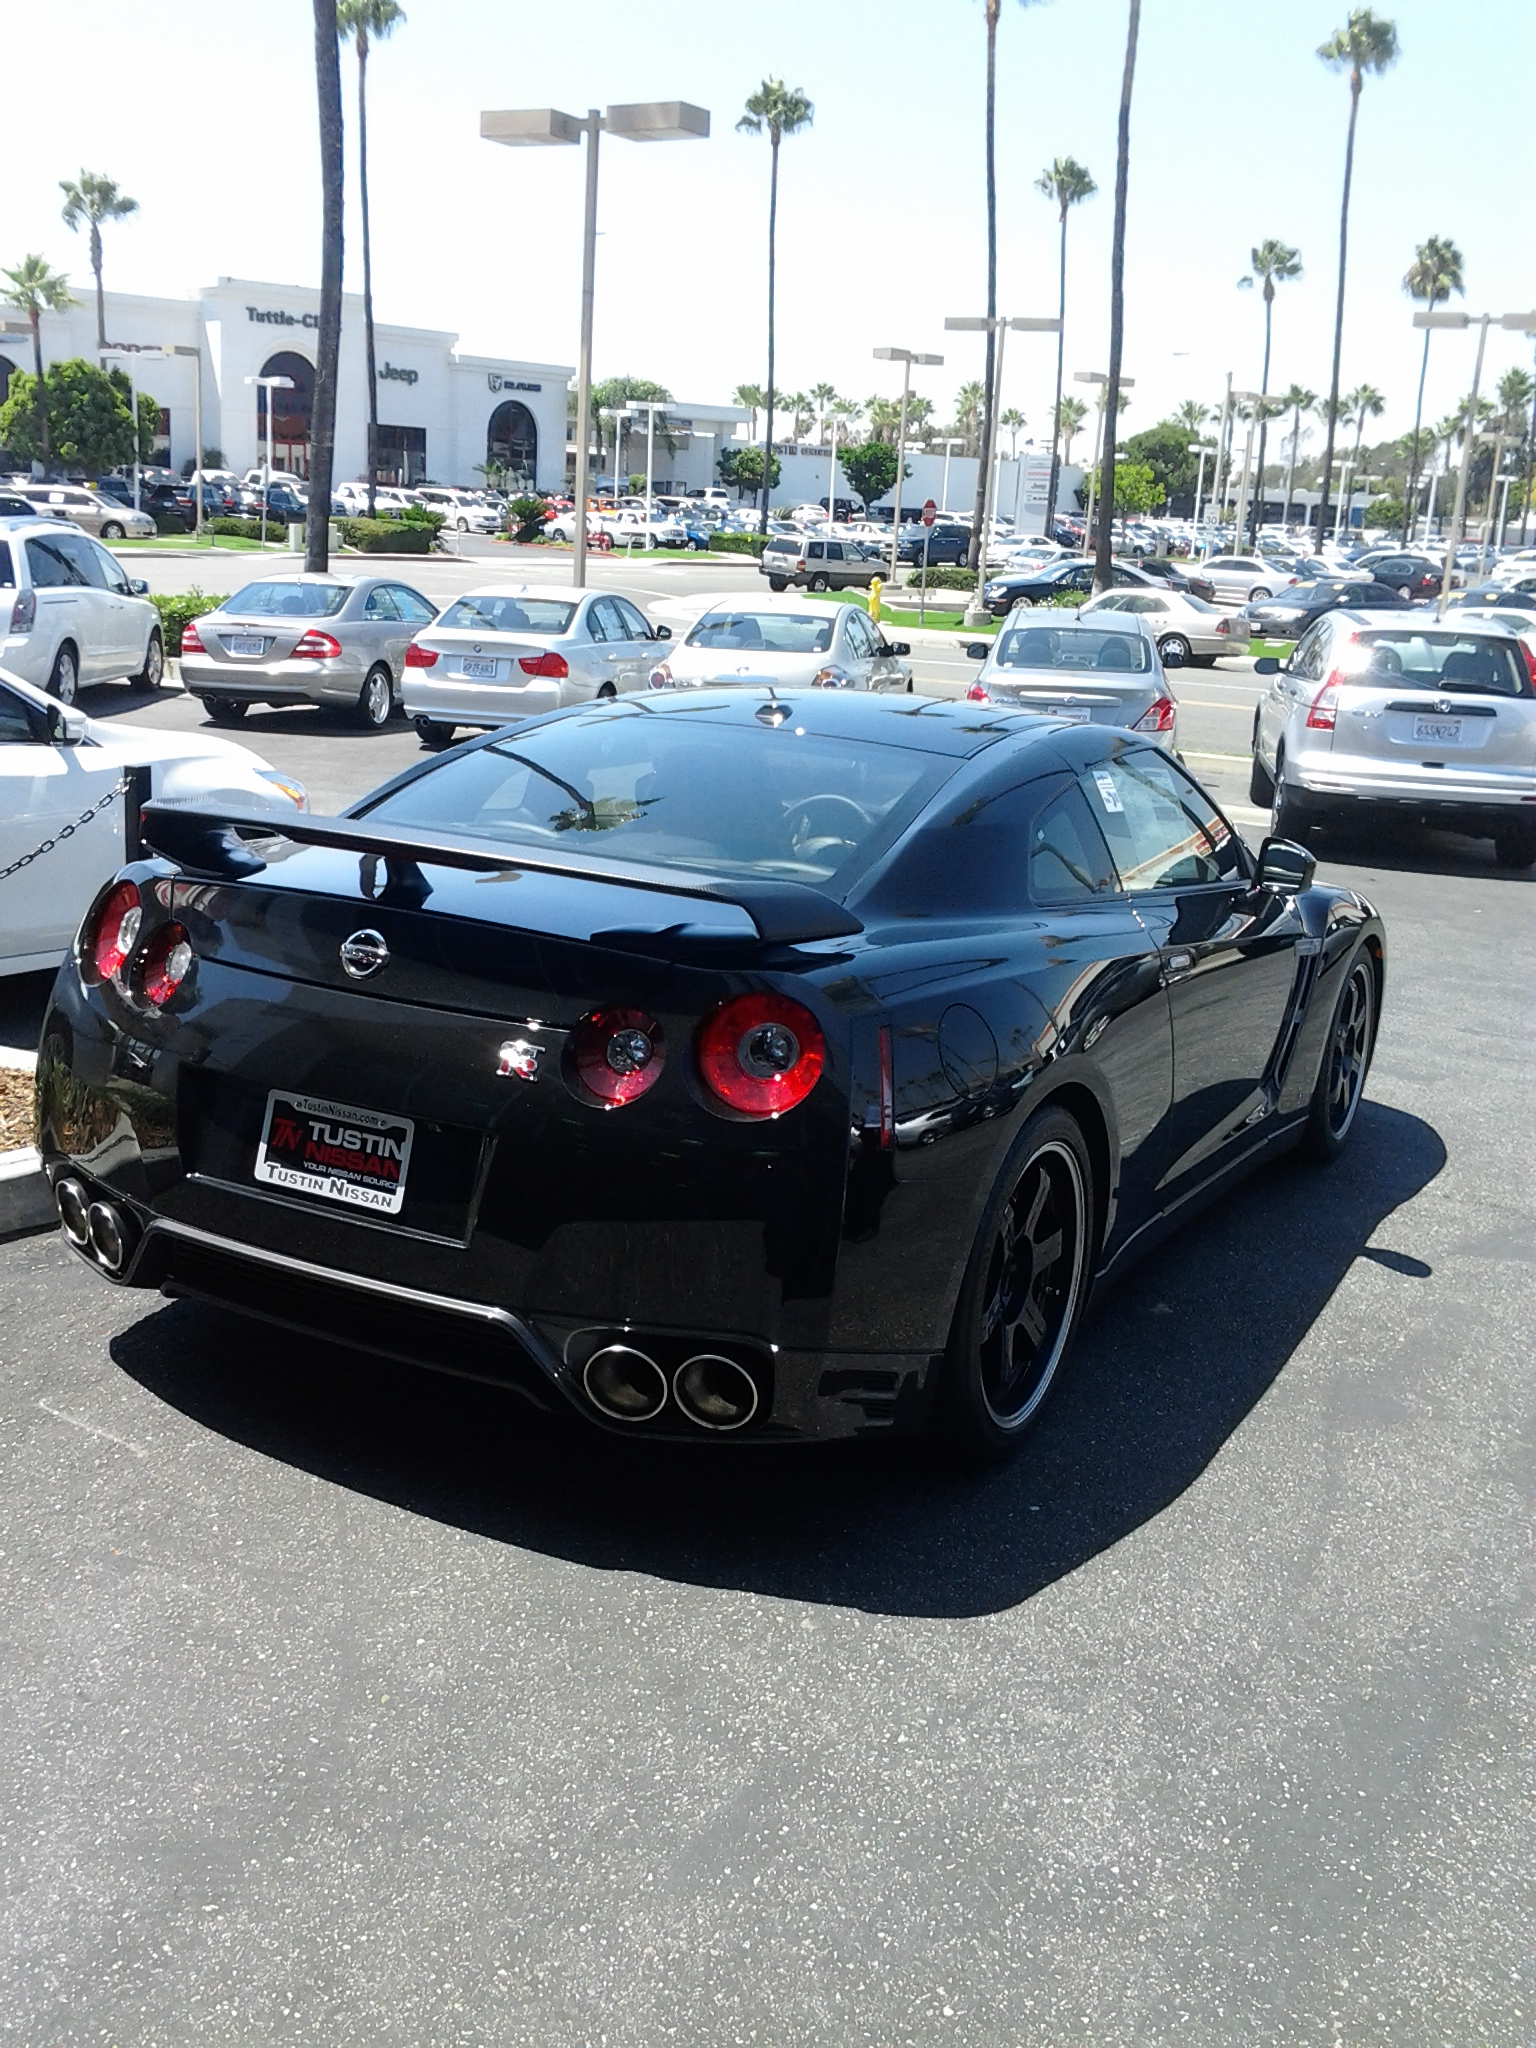 2014 Nissan GTR Black Edition.